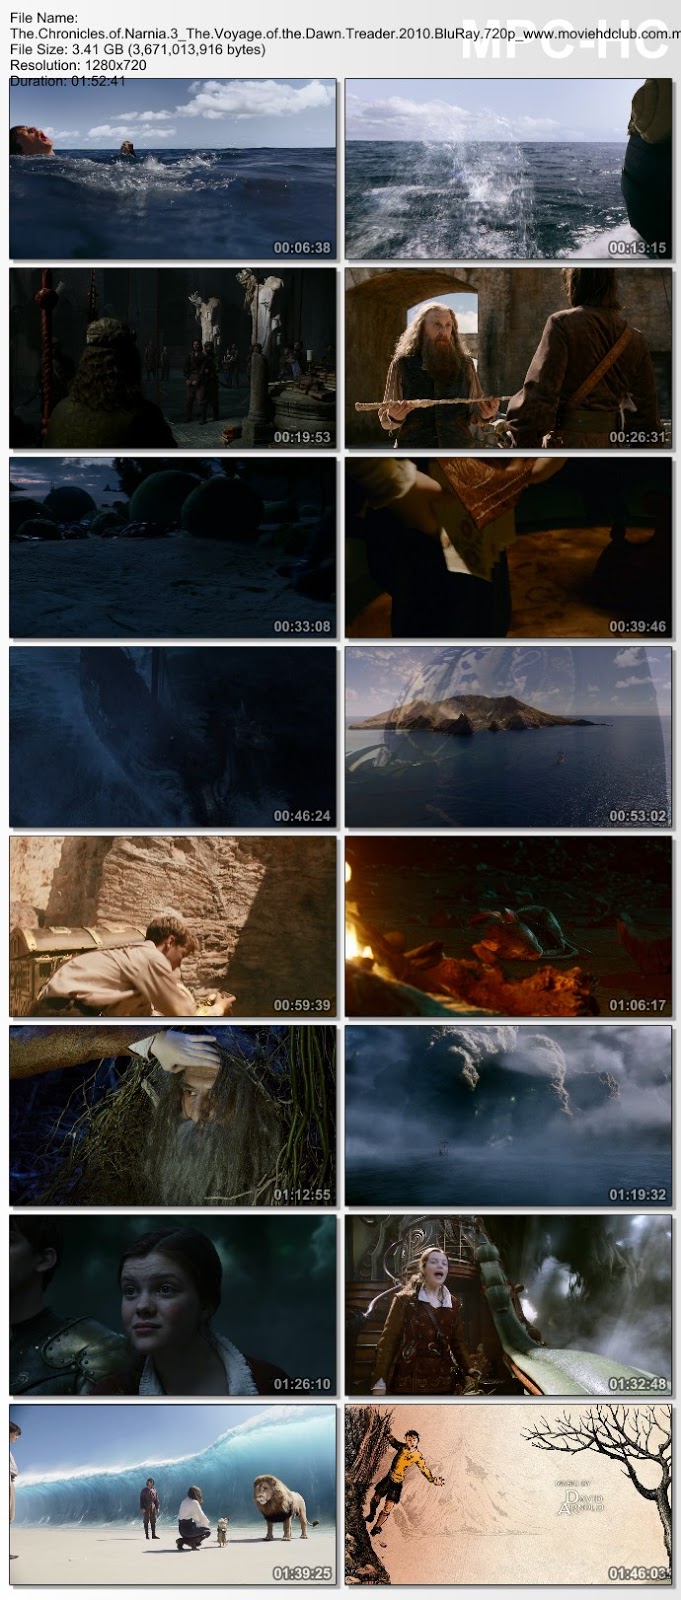 [Mini-HD][Boxset] The Chronicles of Narnia Collection (2005-2010) - อภินิหารตำนานแห่งนาร์เนีย ภาค 1-3 [1080p][เสียง:ไทย DTS/Eng 5.1][ซับ:ไทย/Eng][.MKV] NN3_MovieHdClub_SS